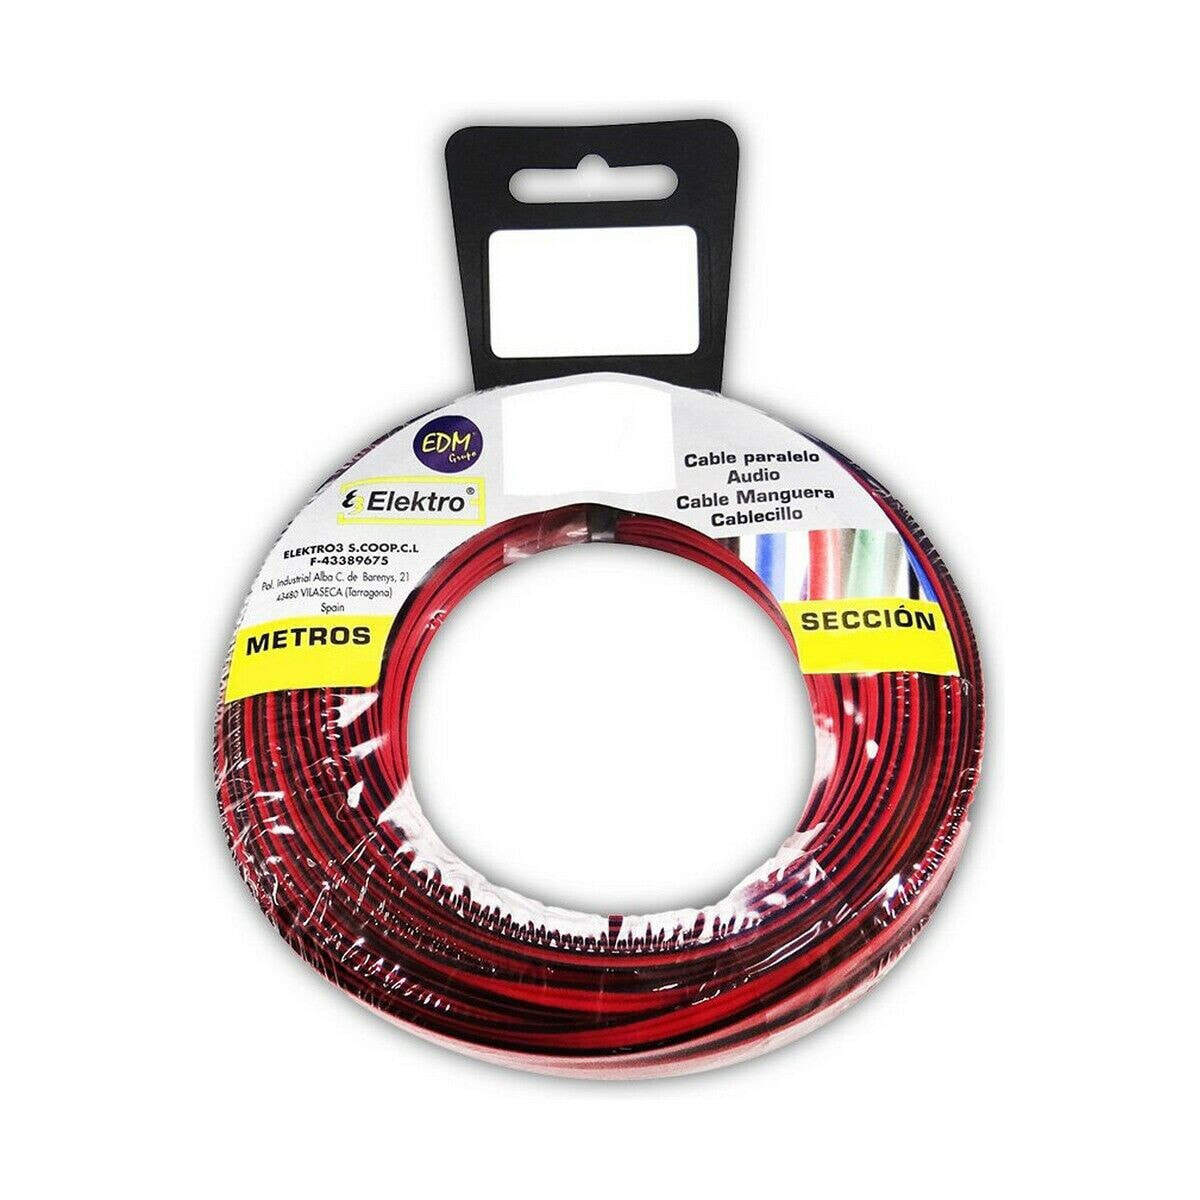 Аудио кабель EDM 2 x 1,5 mm Красный/Черный 20 m